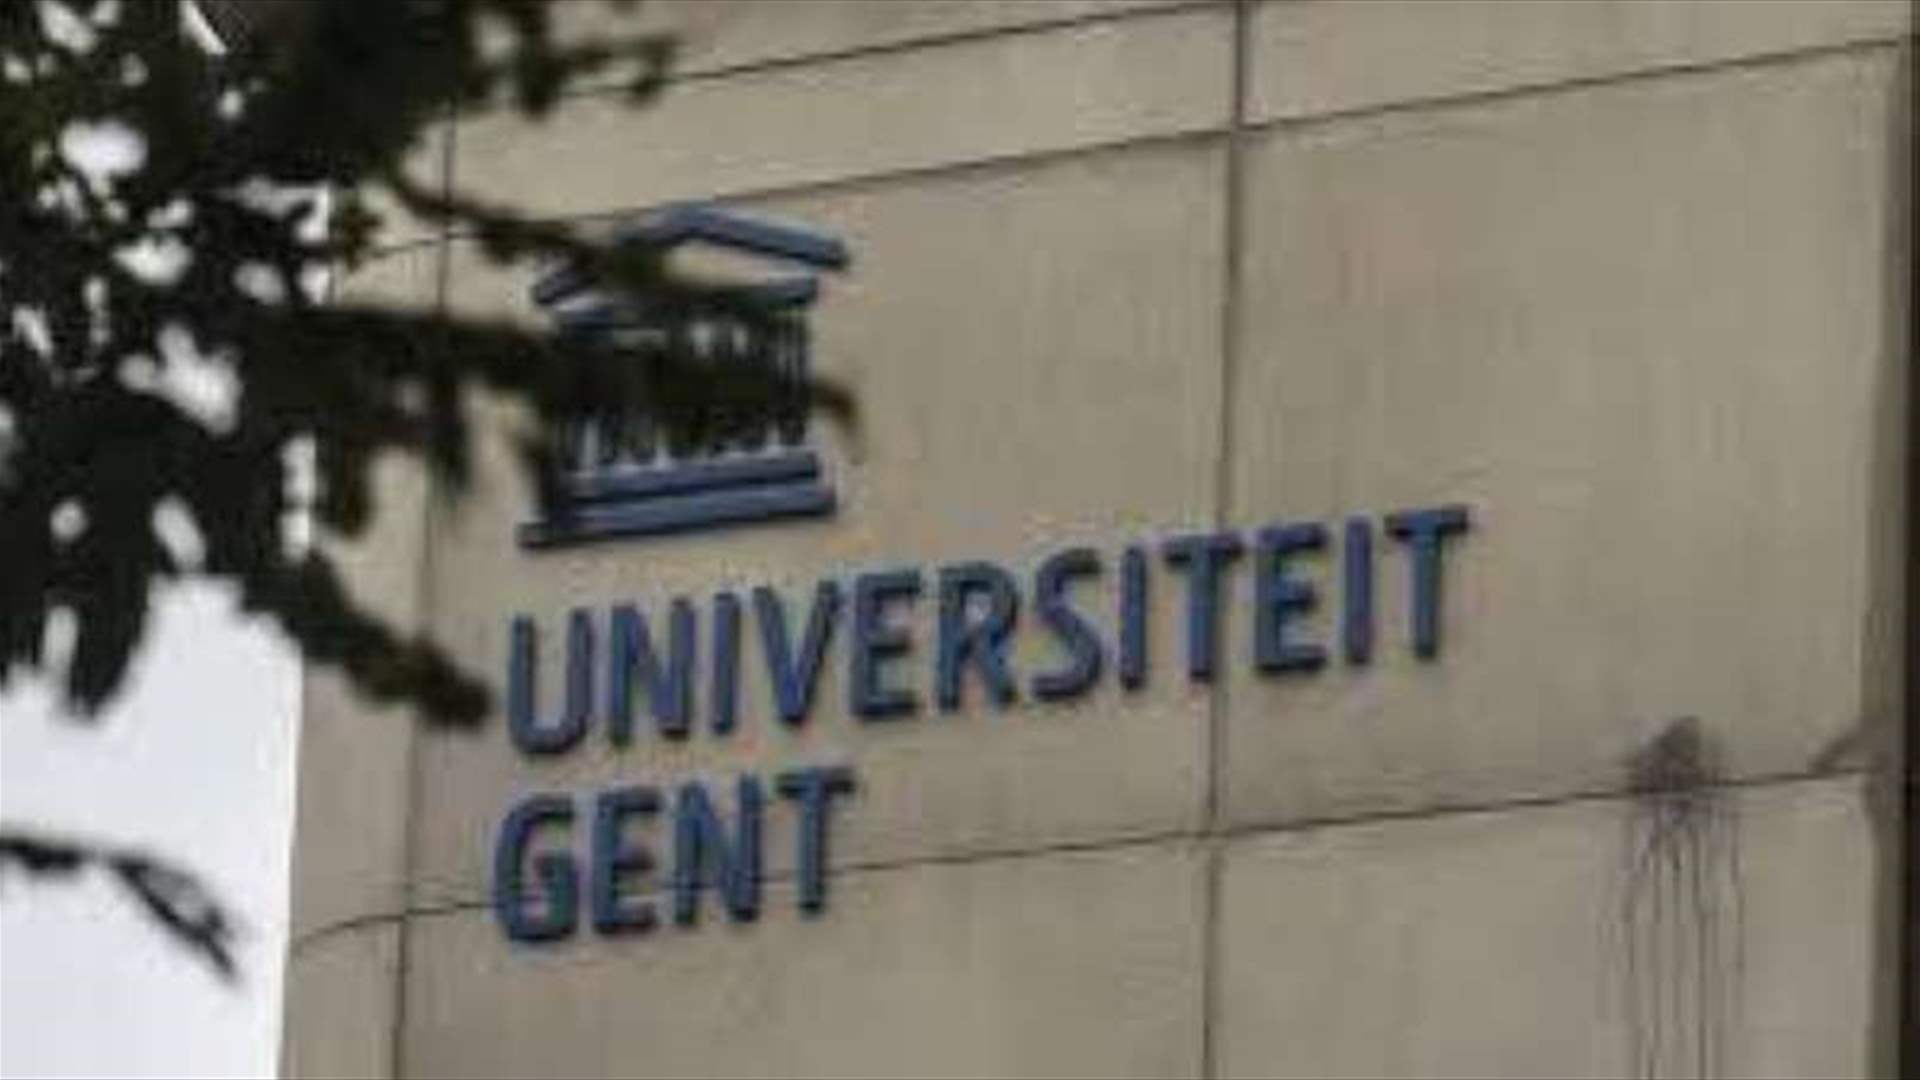 جامعة جنت البلجيكية قطعت علاقاتها بالجامعات والمؤسسات البحثية الإسرائيلية 